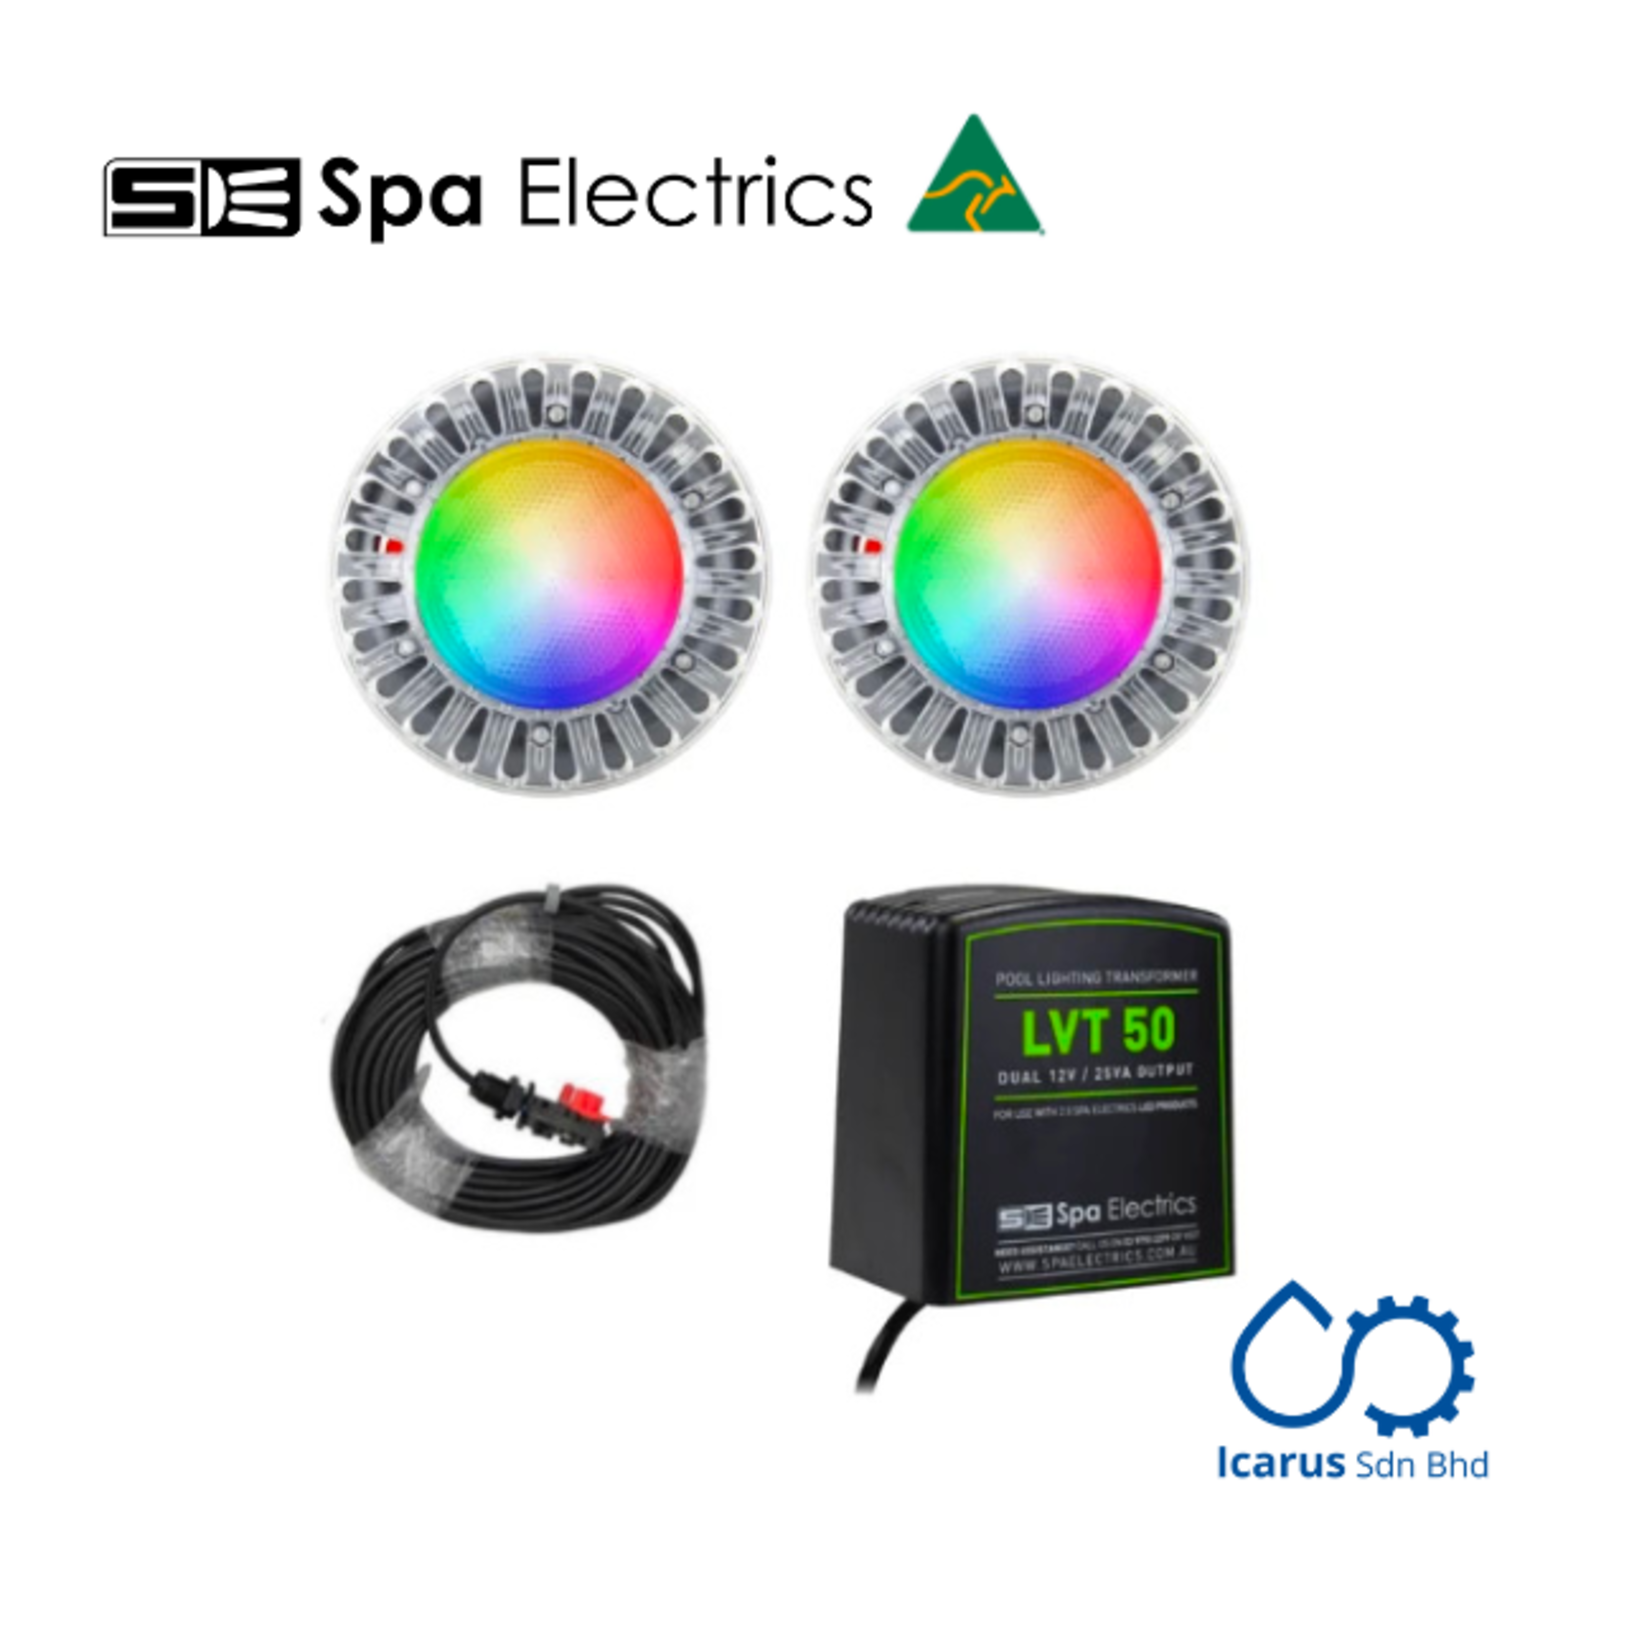 Spa Electrics ATOM EMC 2x Multi PLUS LED Light, Concrete Mounting Kit, 20m Cable,  Dual LV50 Transformer